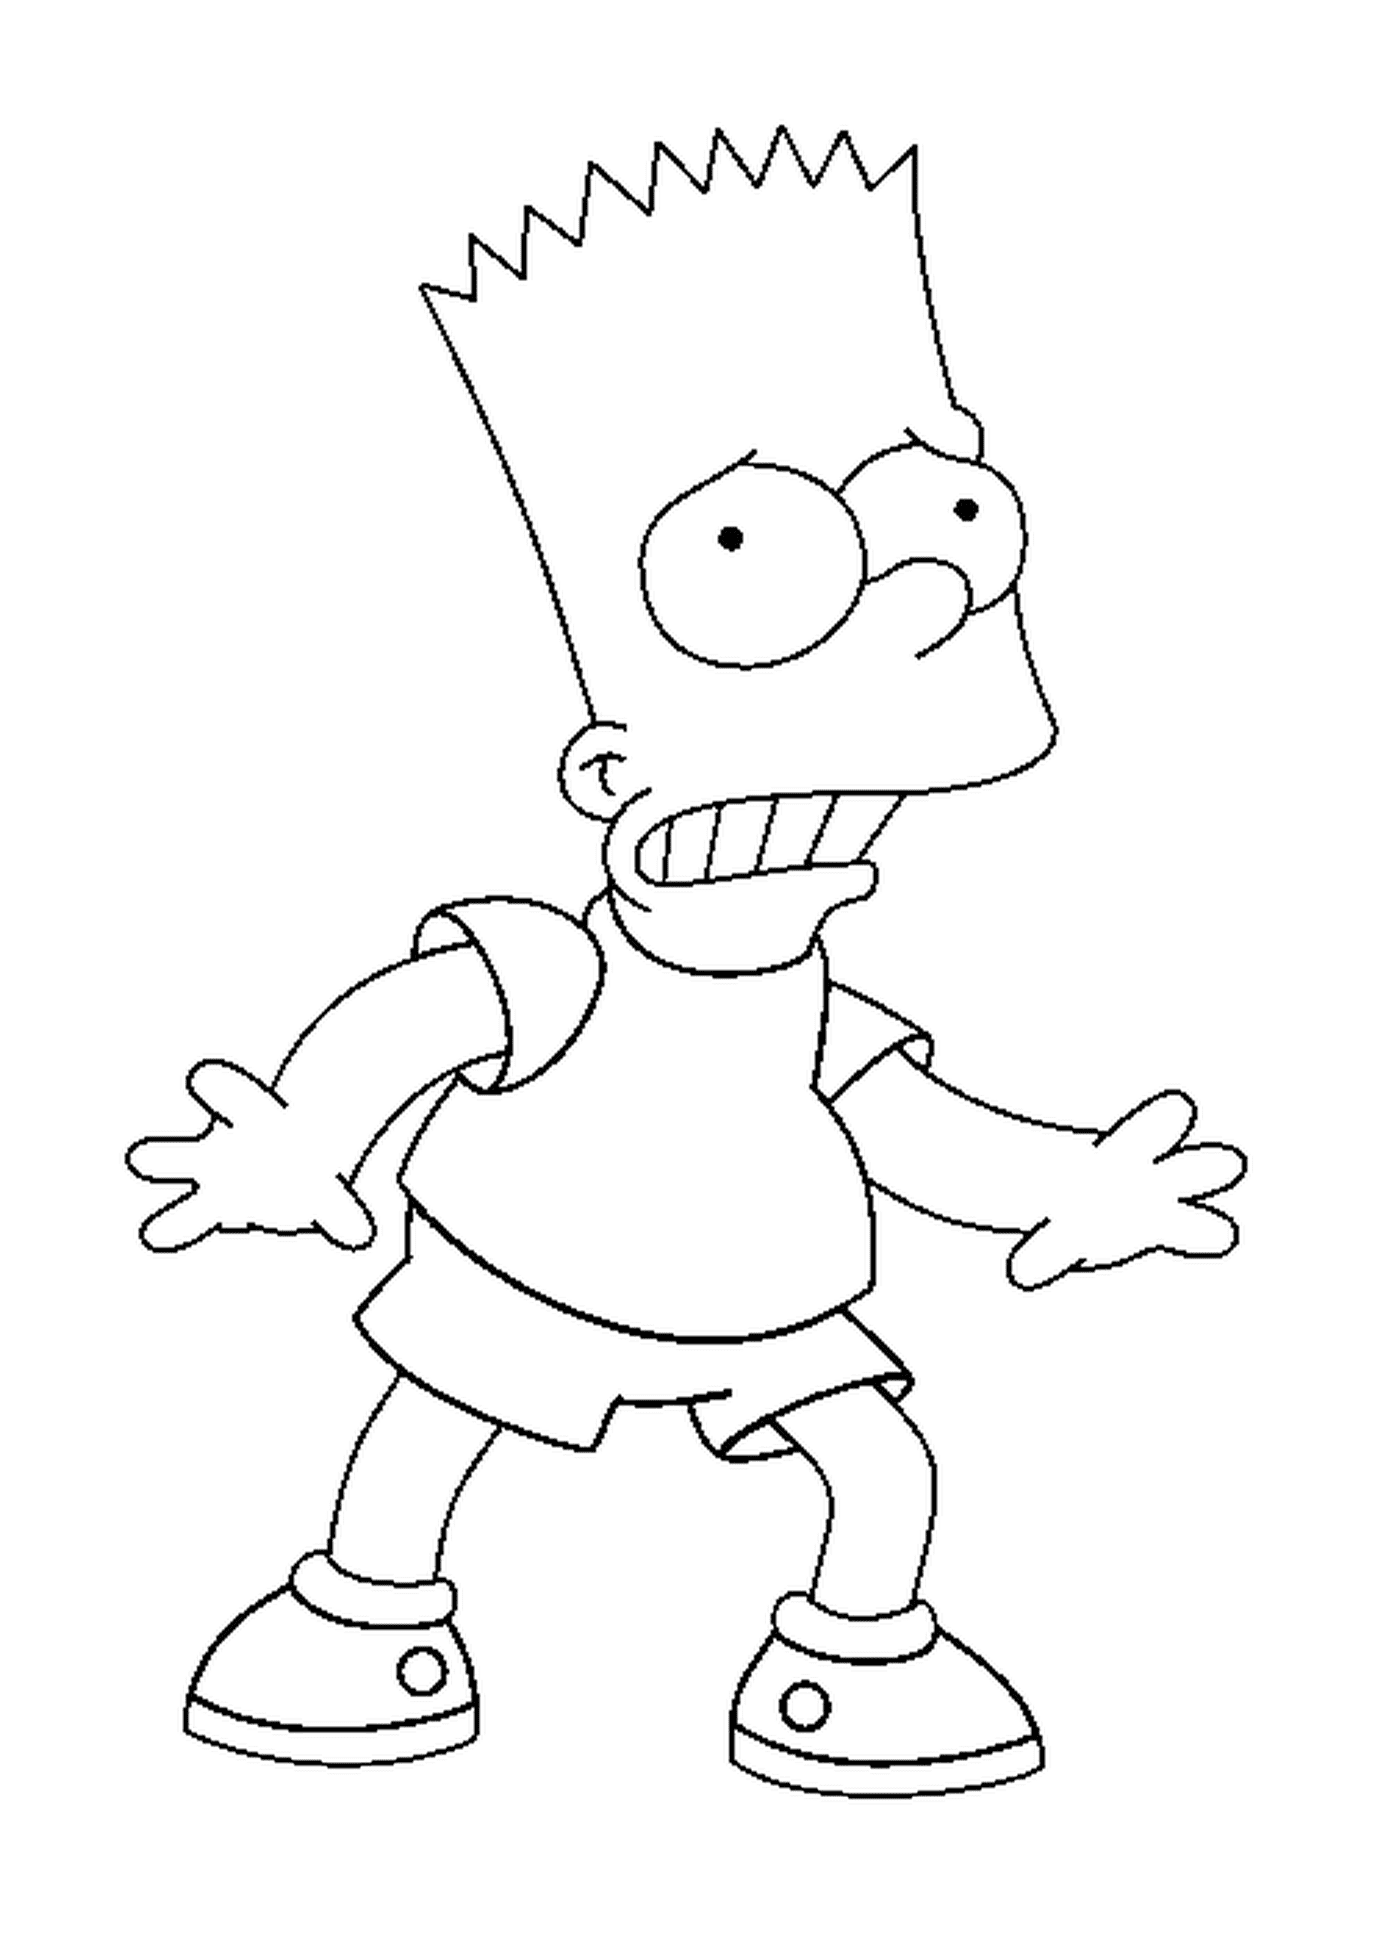  Bart ha un'espressione spaventata 